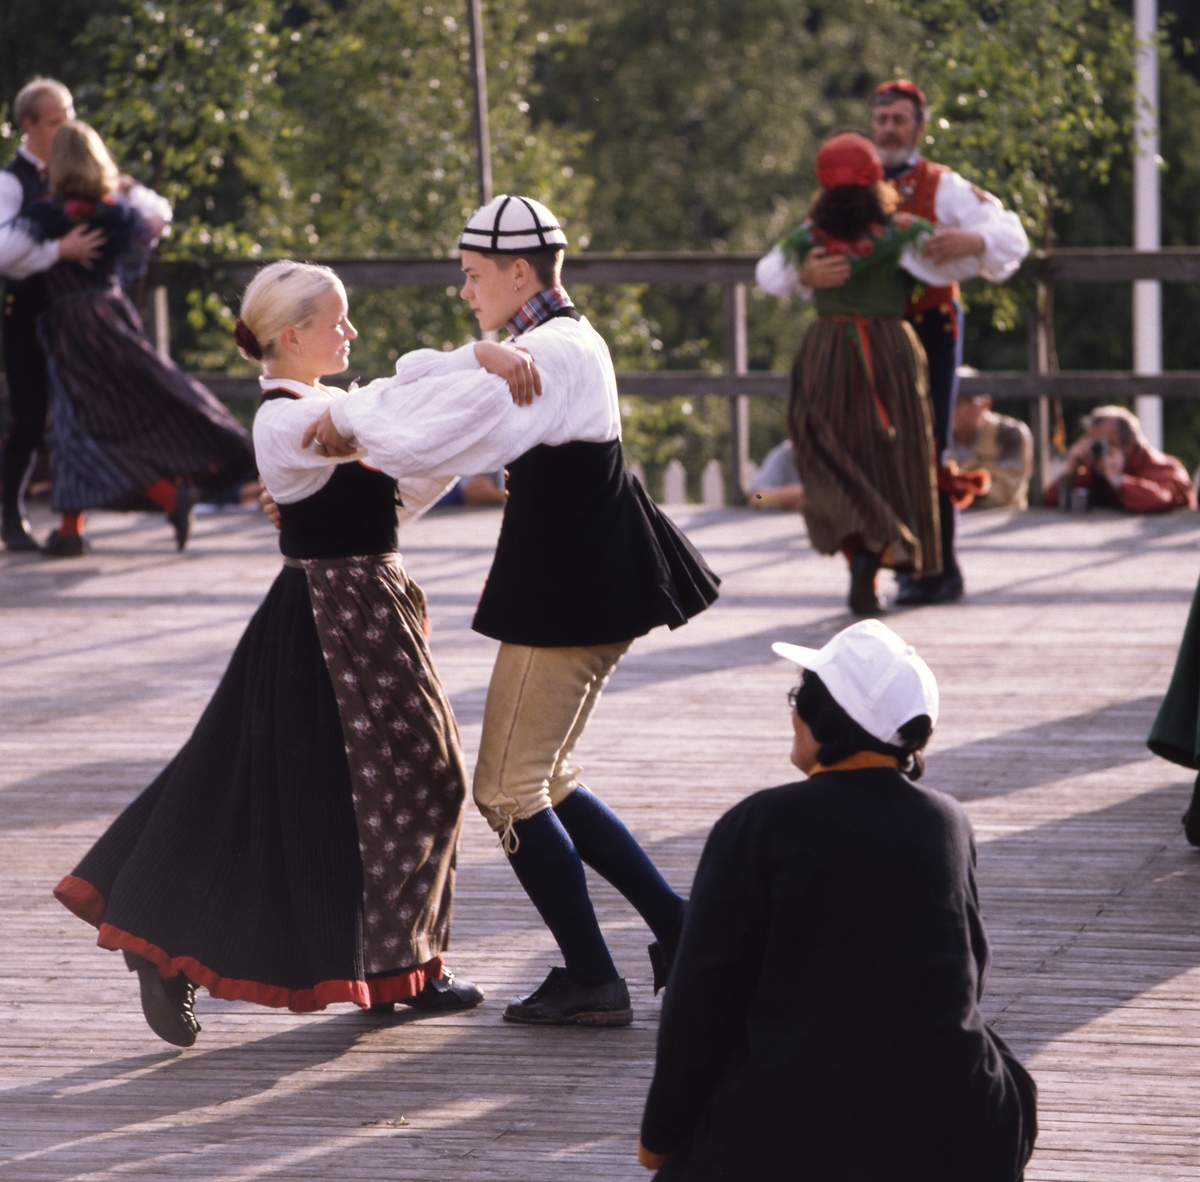 Hälsingehambons final i Järvsö 11 juli 1998. Här uppträder några danspar på Stenegårds scen.